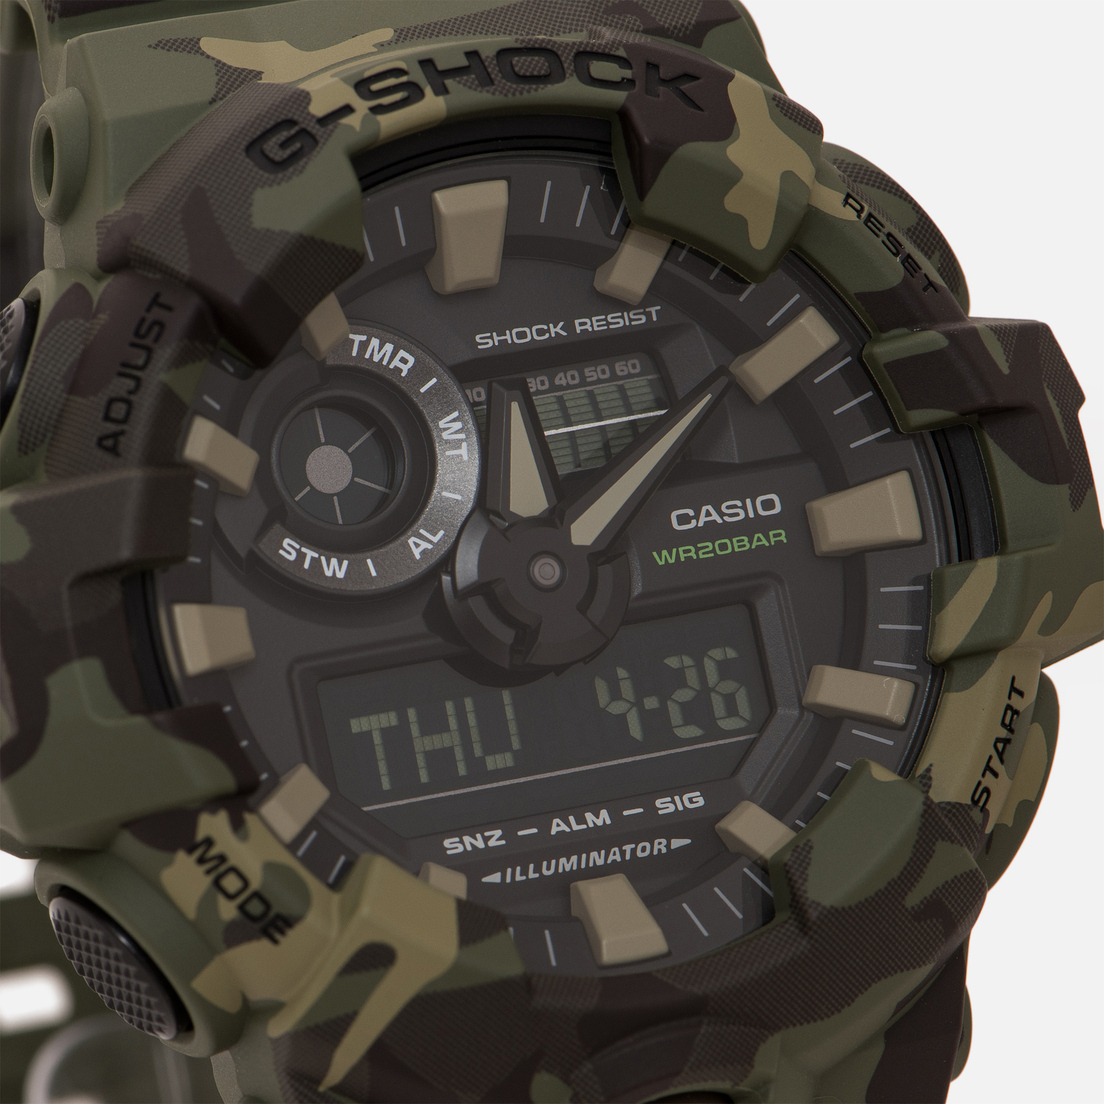 CASIO Наручные часы G-SHOCK GA-700CM-3A Camouflage Series